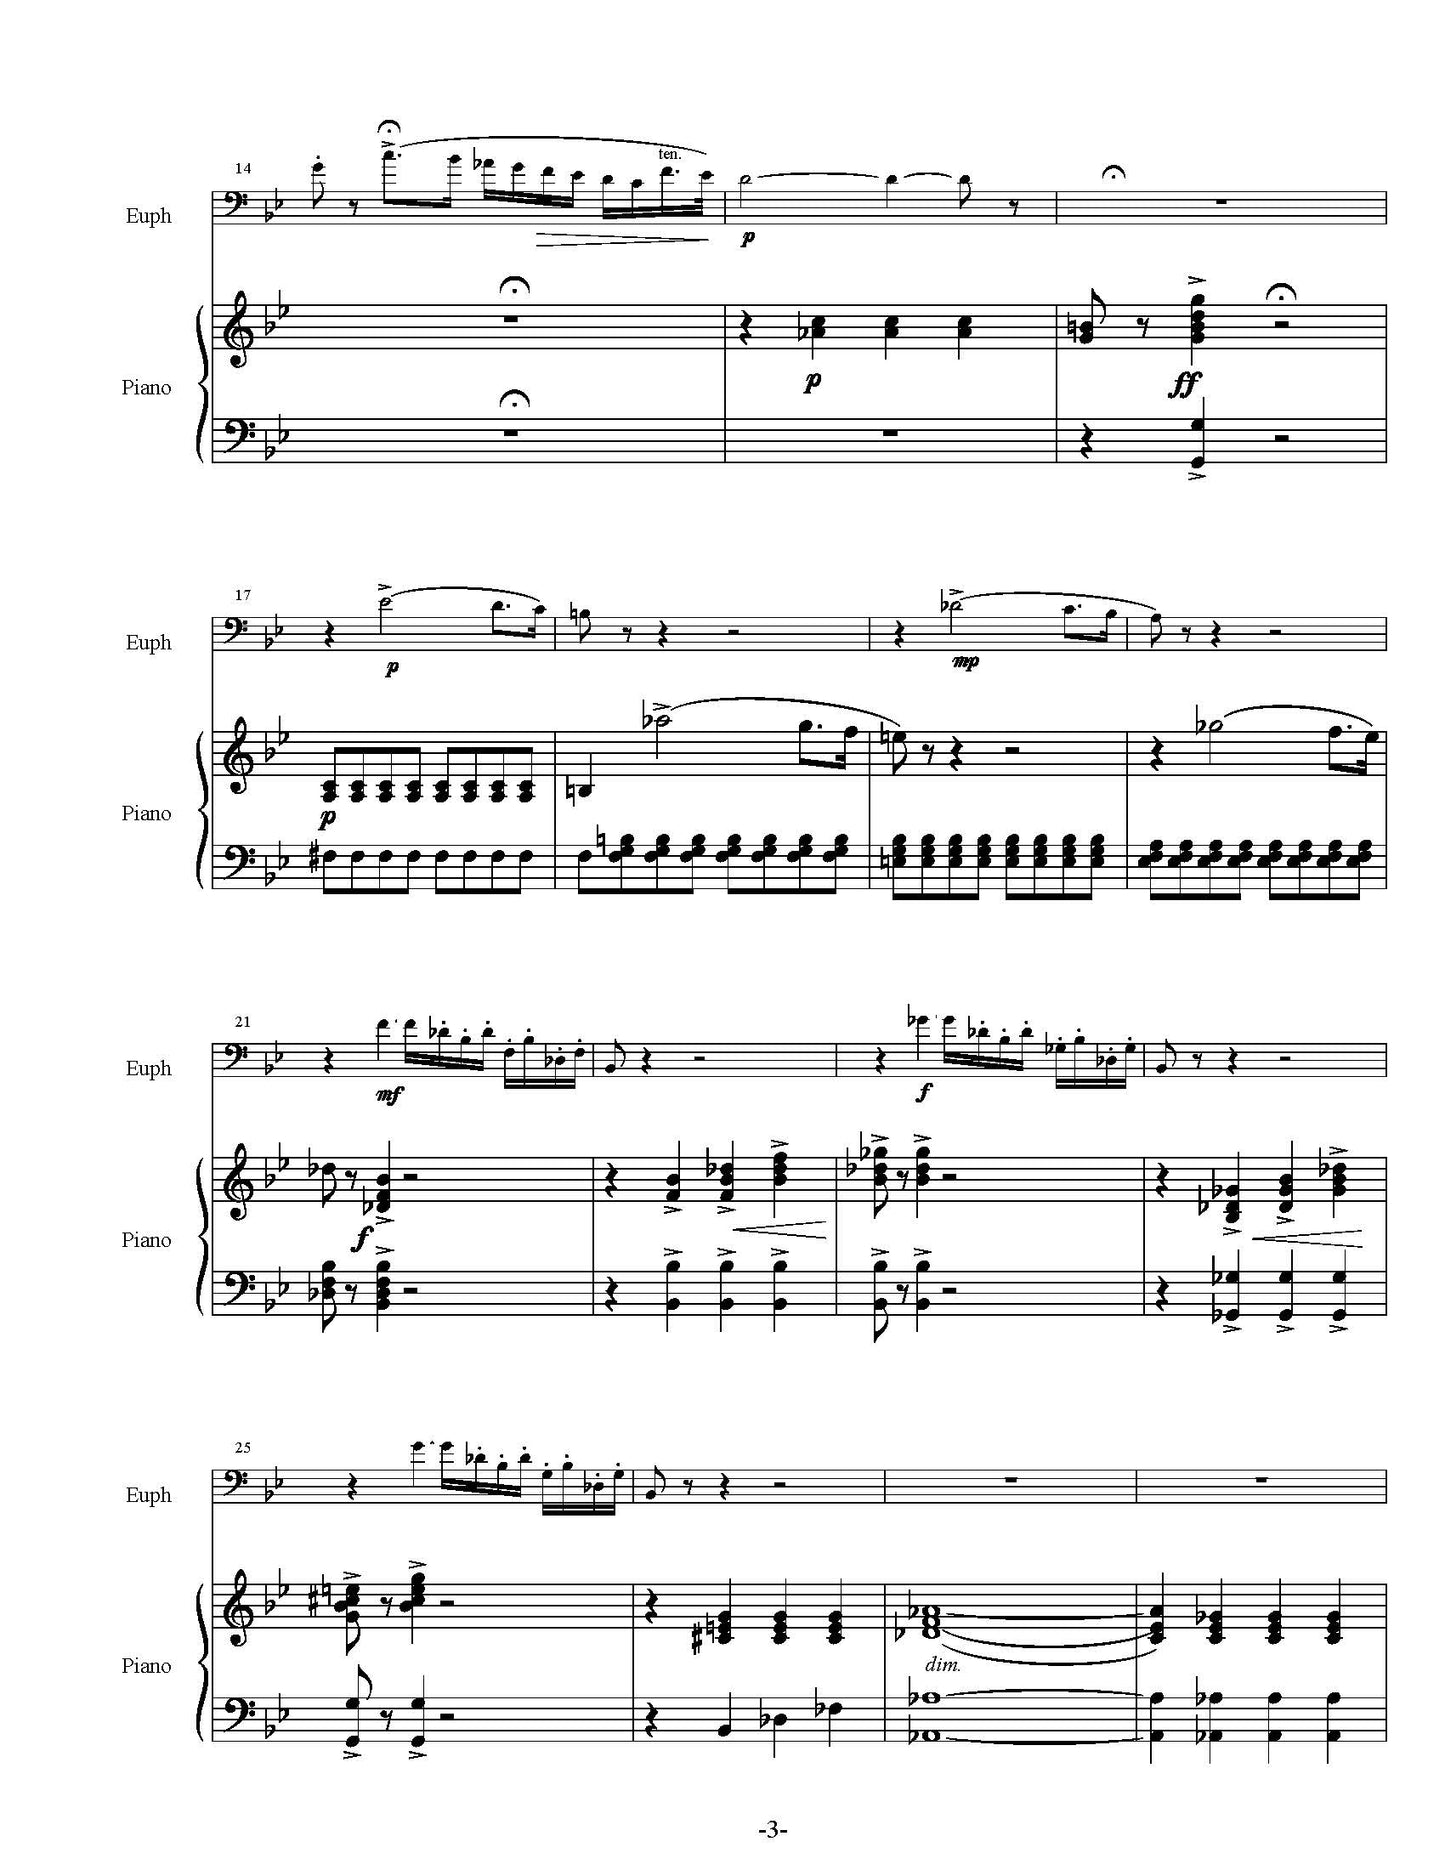 Picchi- Ermano - Fantaisie Originale (Piano)